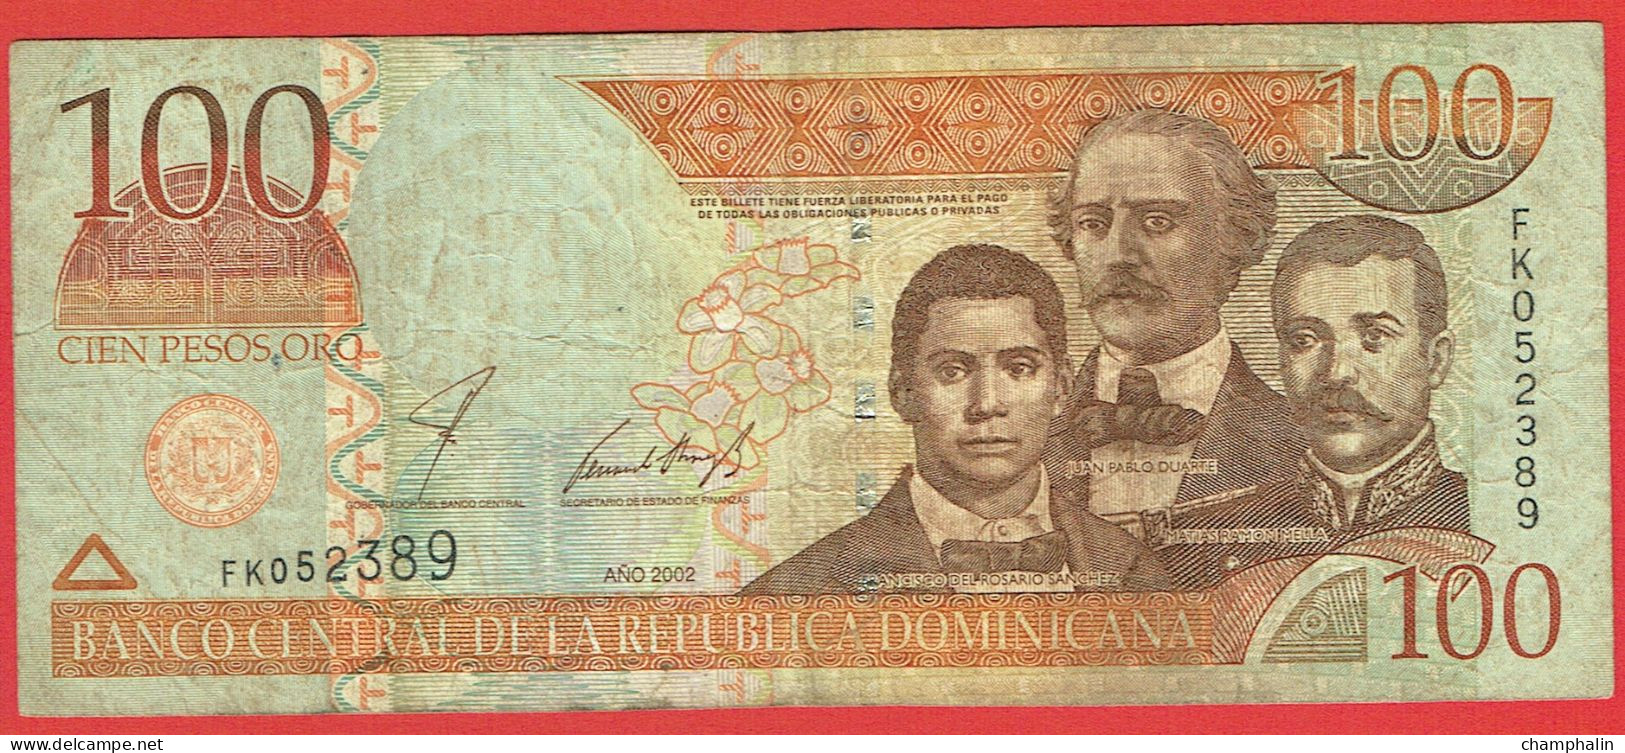 République Dominicaine - Billet De 100 Pesos - J.P. Duarte, F. Del Rosario Sanchez & M.R. Mella - 2002 - P171a - Dominicaine